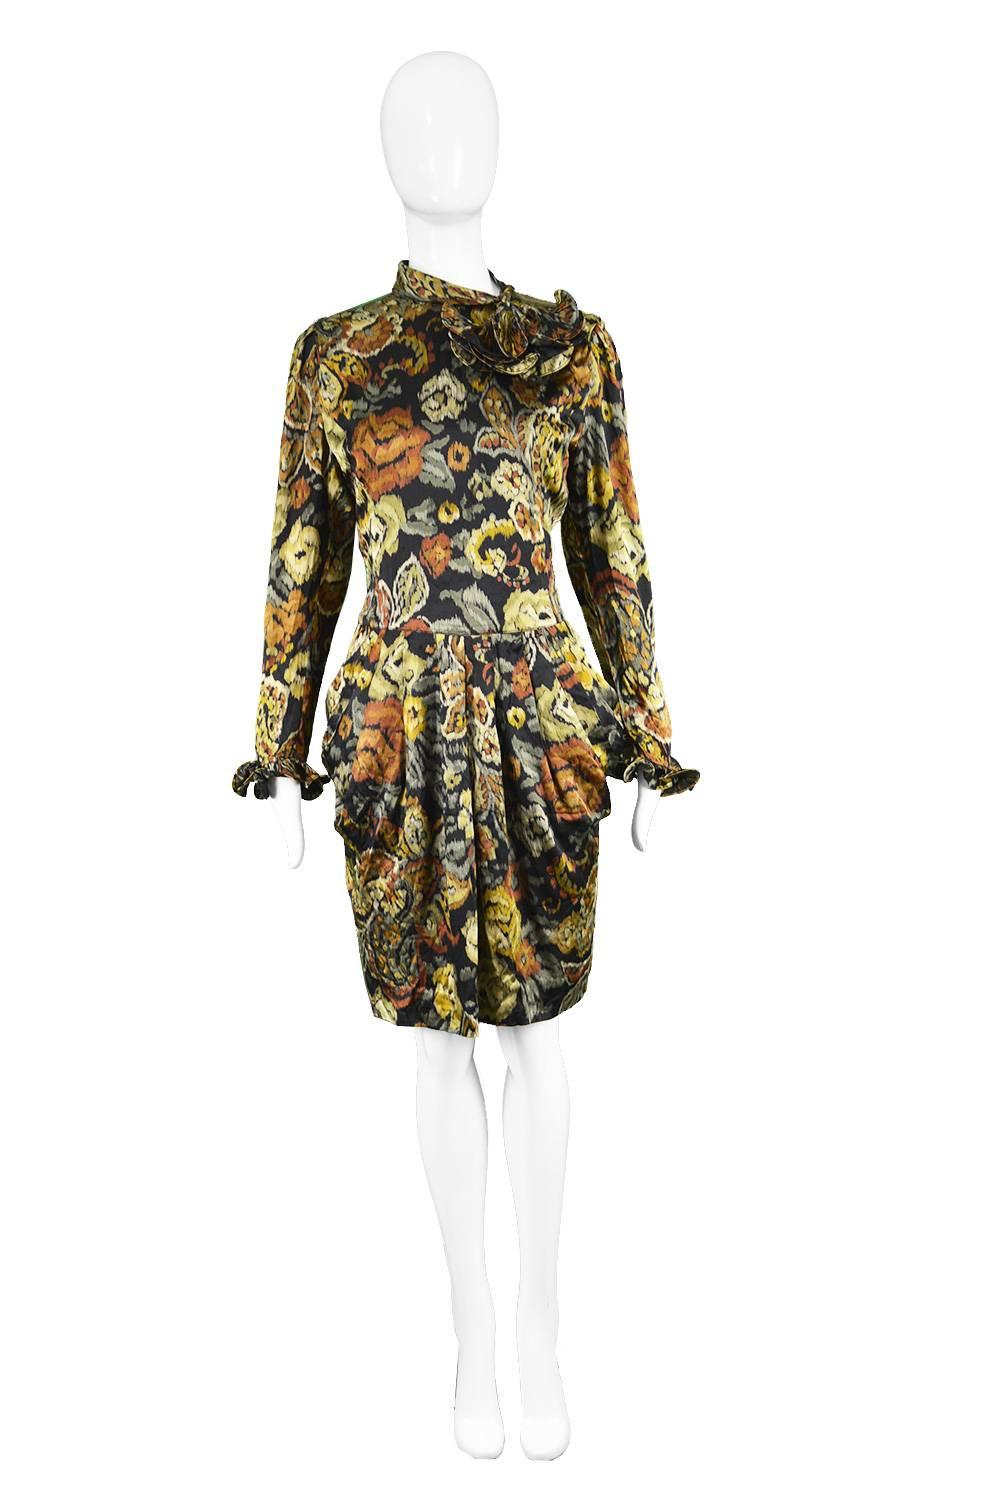 Louis Feraud Vintage 1980s Long Sleeve Floral Ruffle Silk Cocktail Dress

Estimated Size: UK 12/ US 8/ EU 40. Please check measurements. 
Bust - 38” / 96cm
Waist - 30” / 76cm
Hips - 42” / 106cm
Length (Shoulder to Hem) - 38” / 96cm
Shoulder to